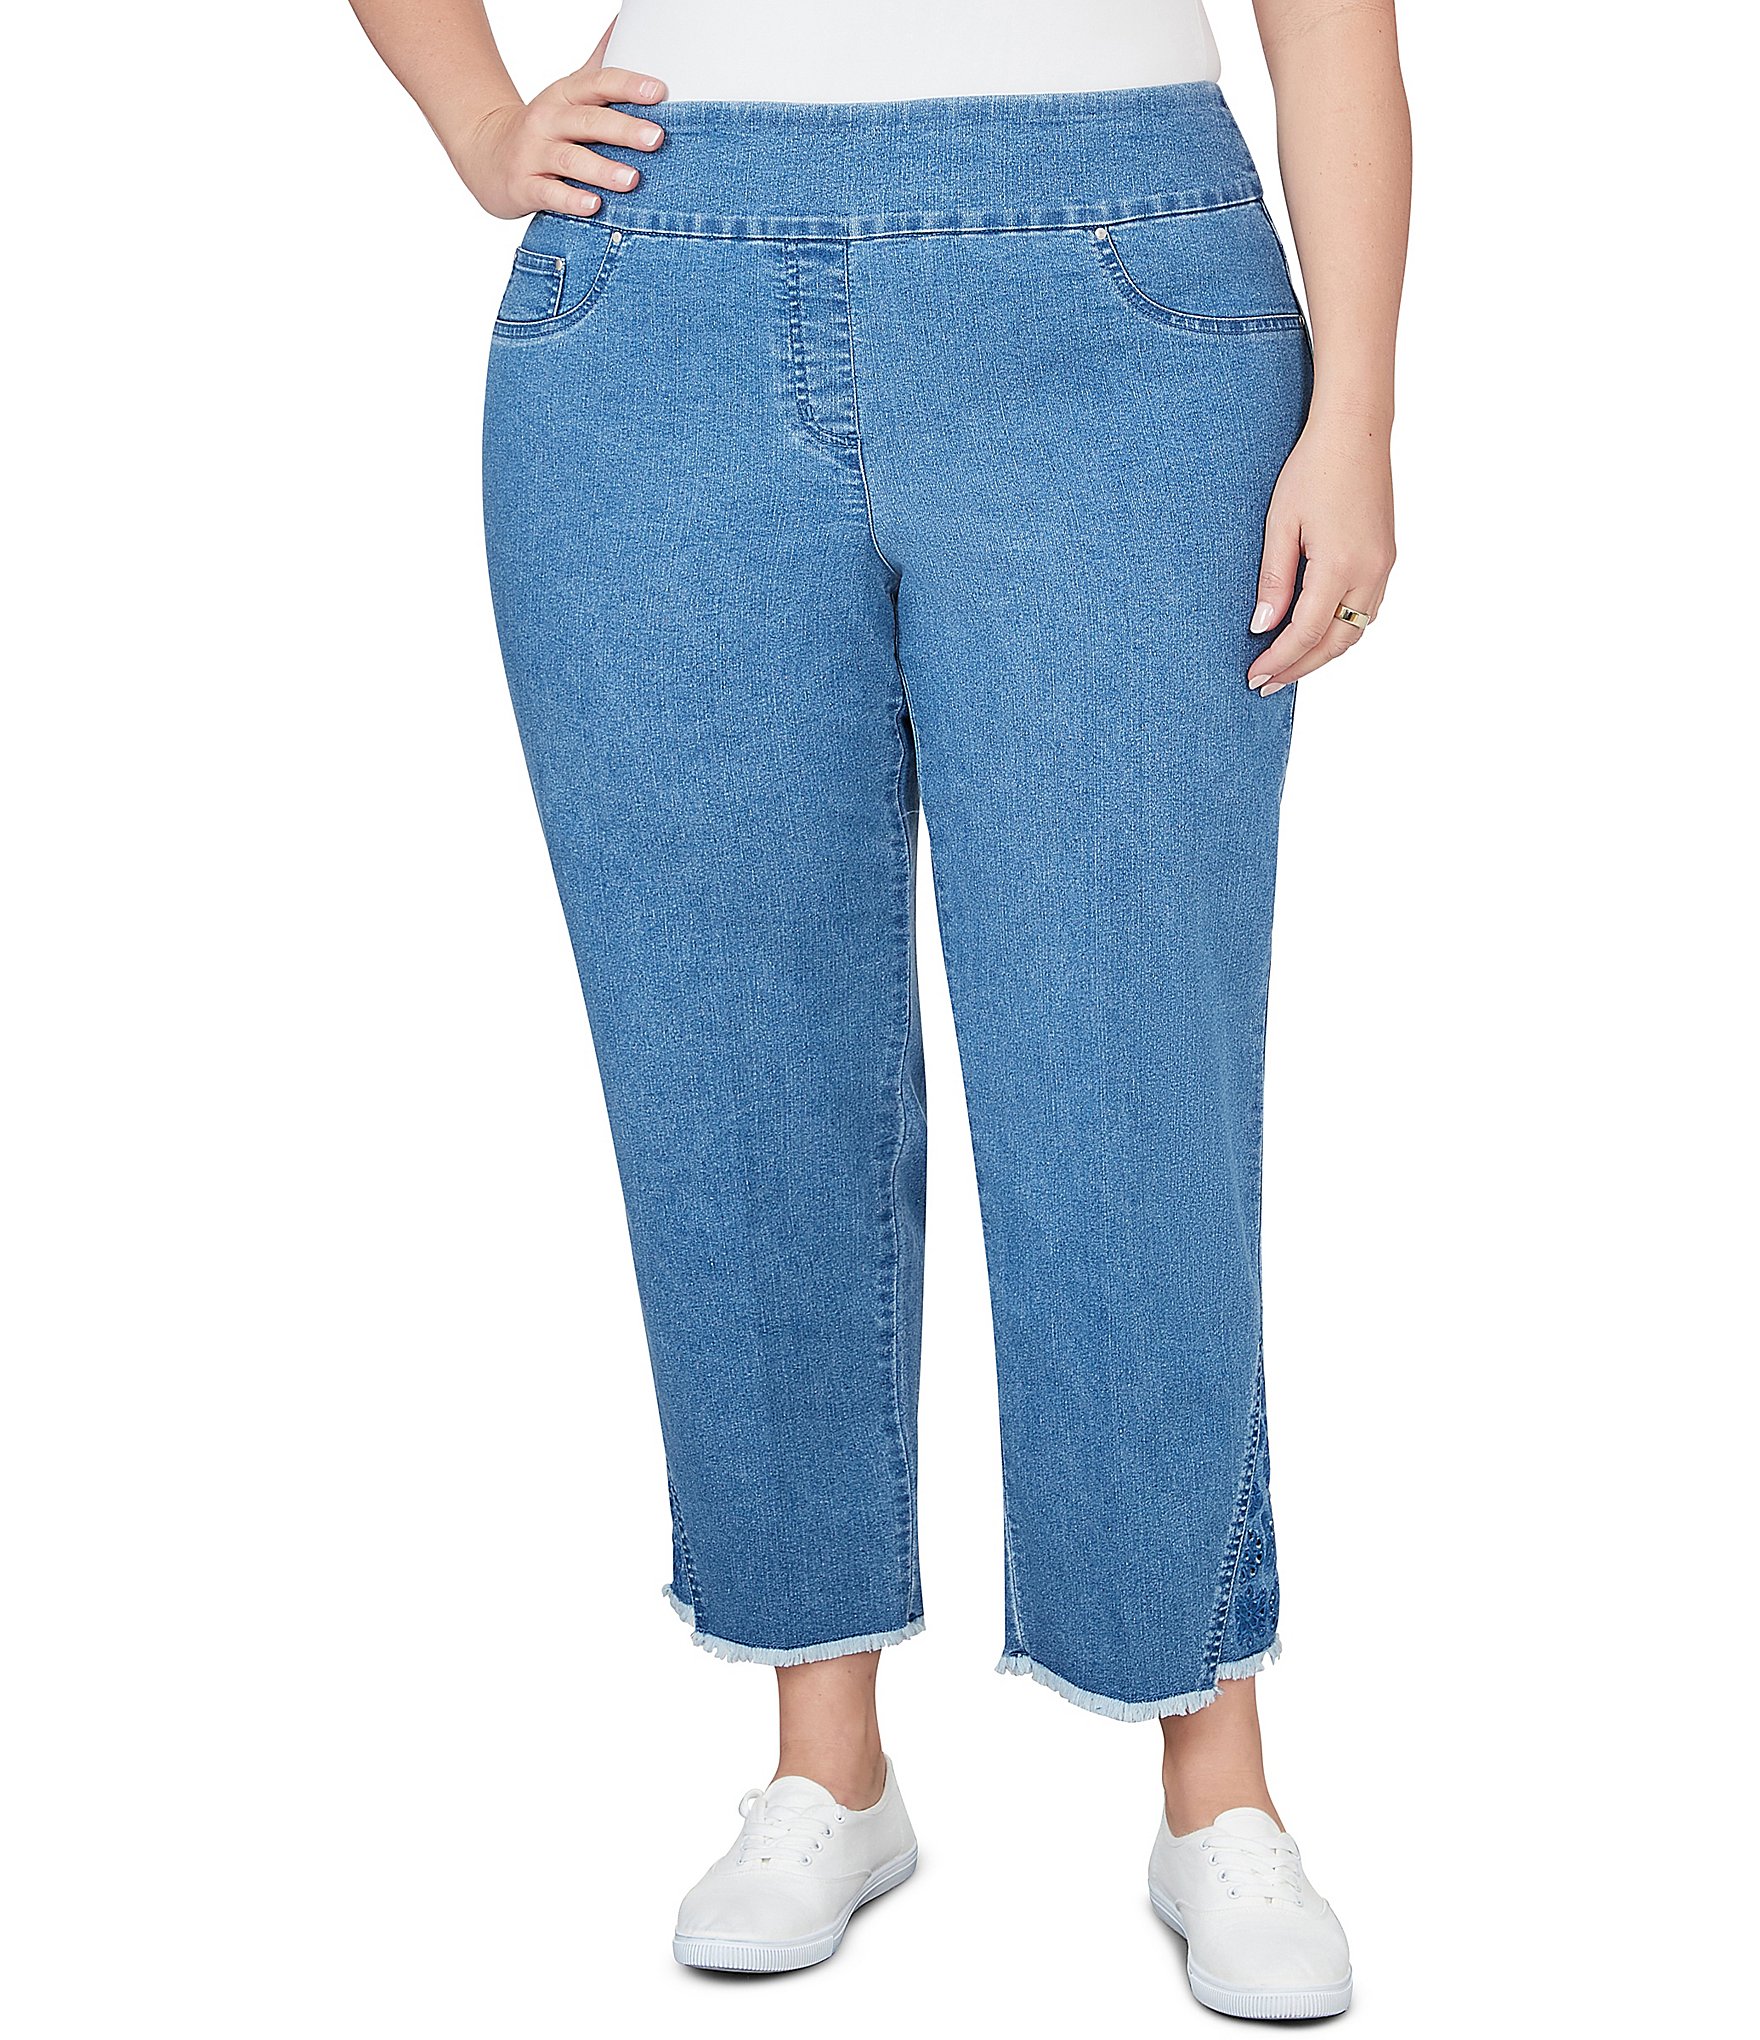 elastic waist jeans: Women's Plus-Size Jeans